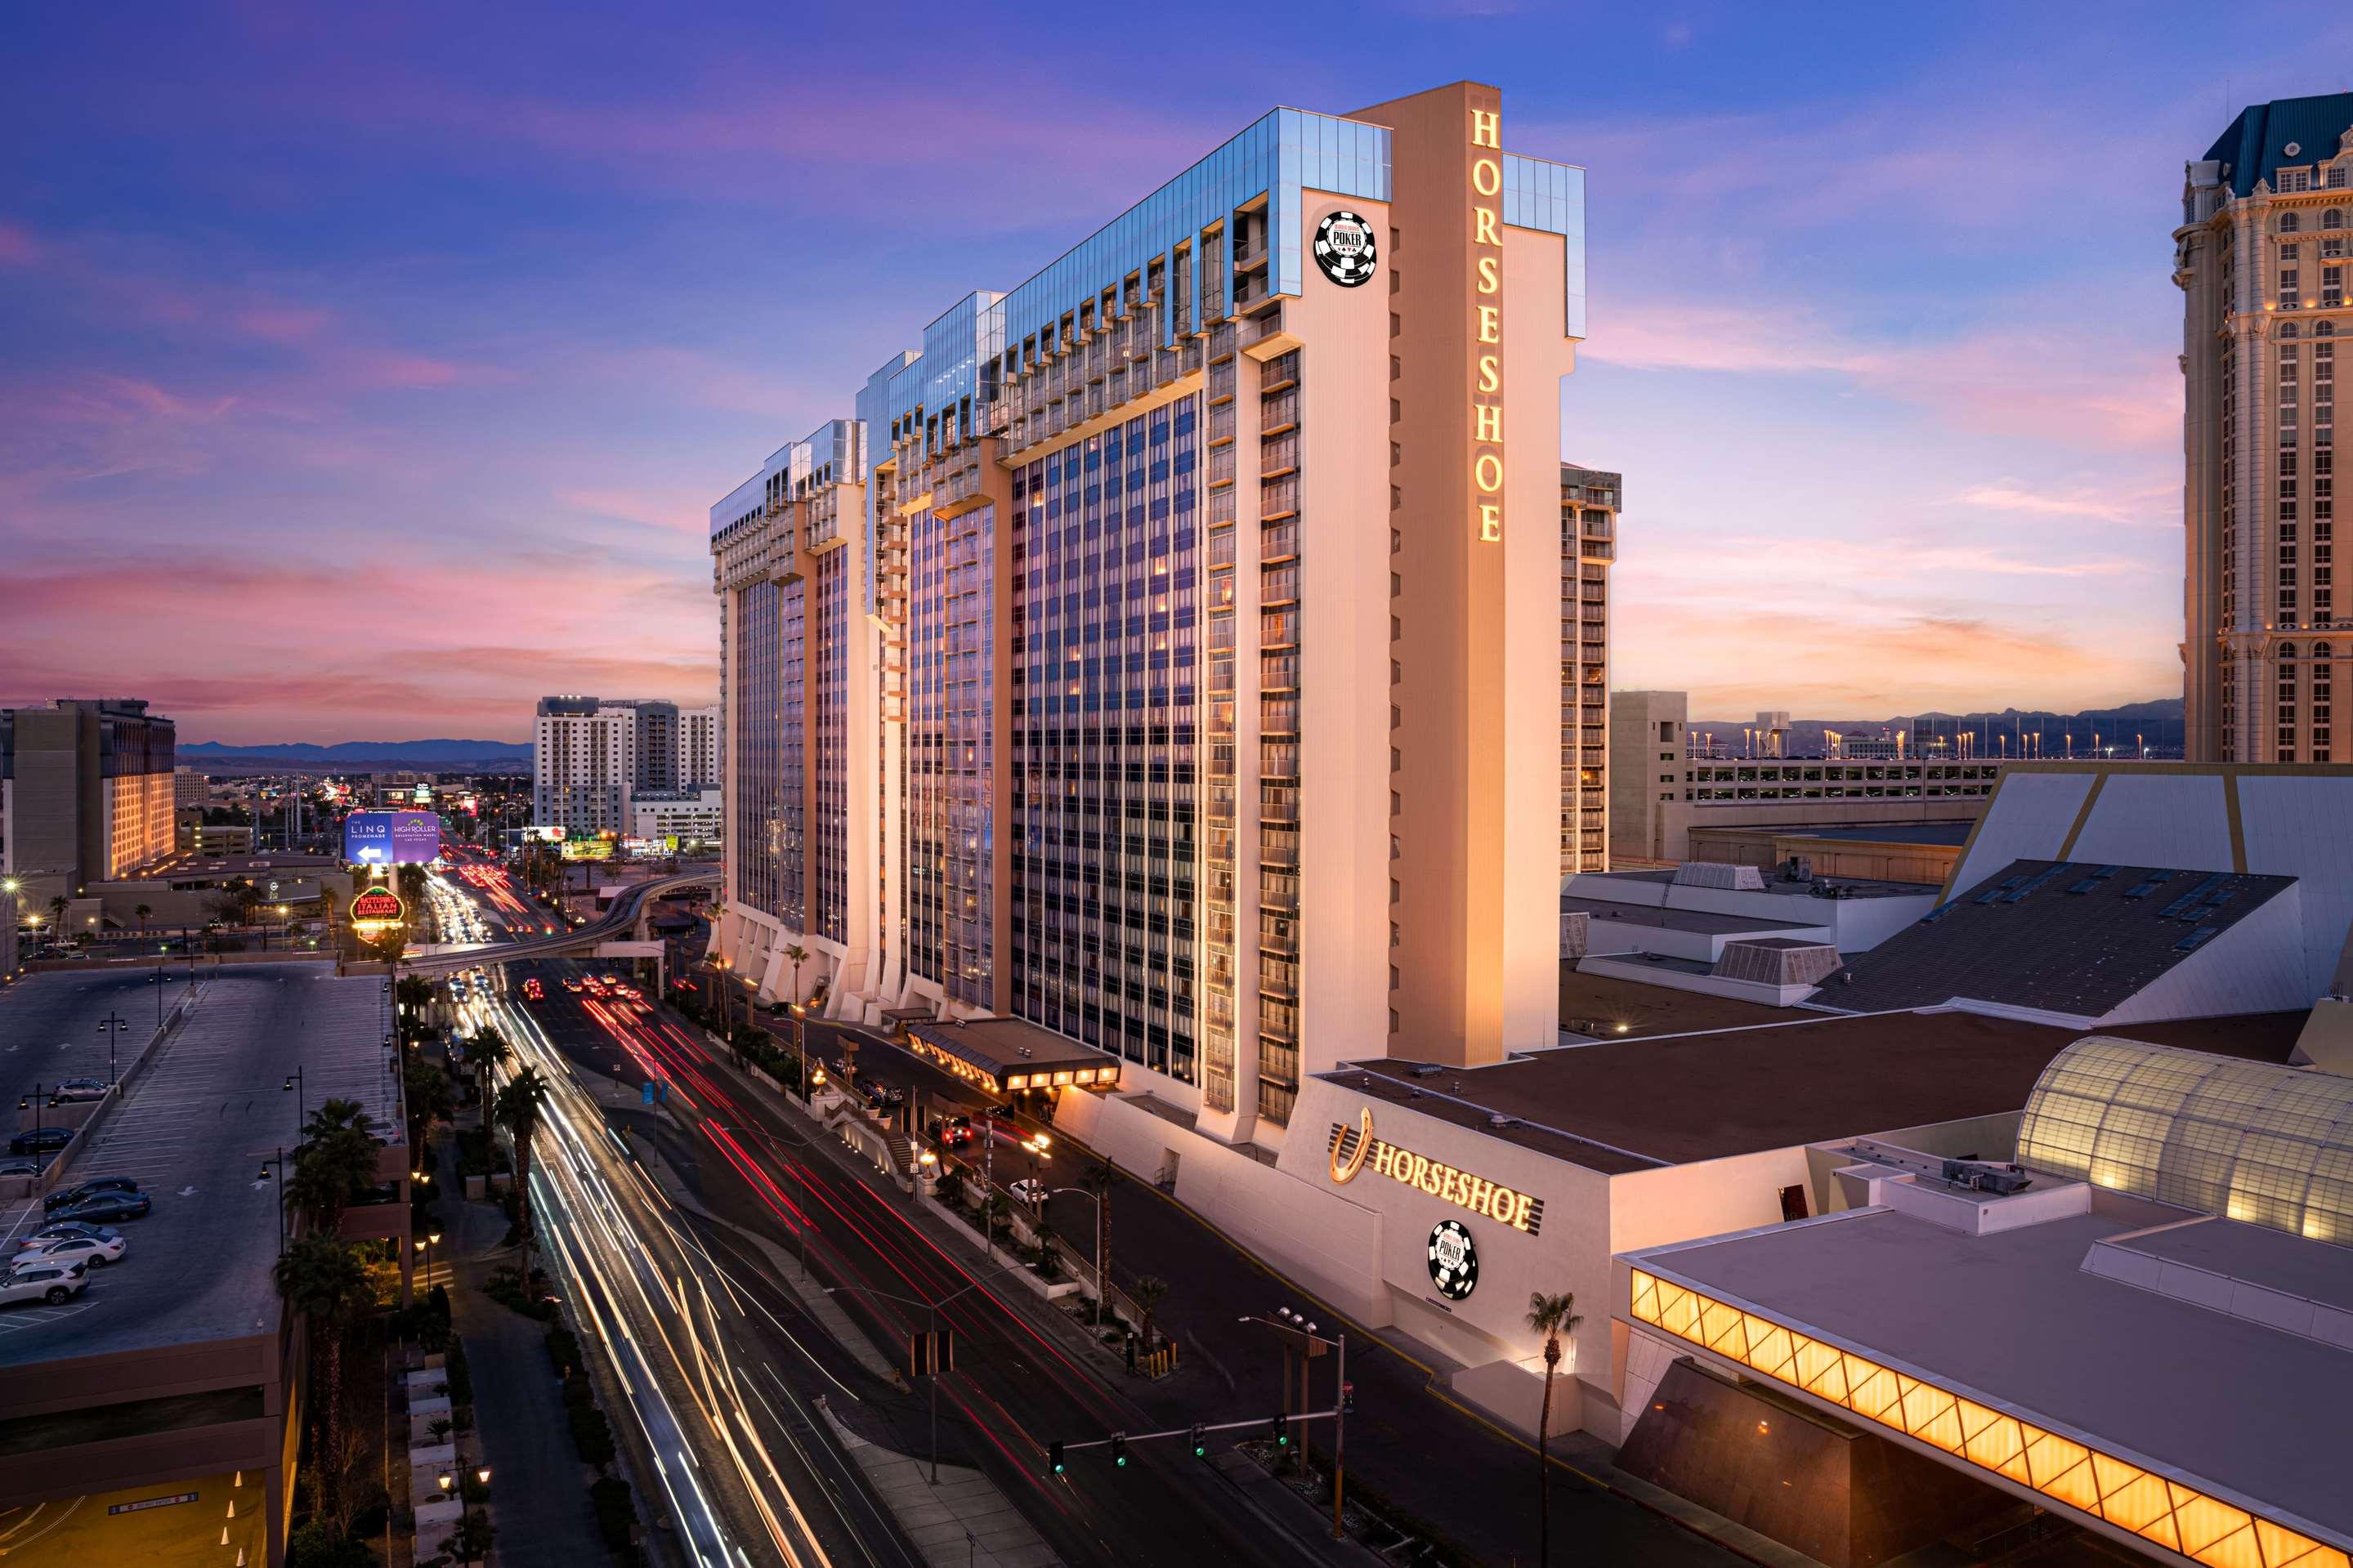 THE POOL AT THE PARIS HOTEL & CASINO - 44 Photos & 38 Reviews - 3655 S Las  Vegas Blvd, Las Vegas, Nevada - Recreation Centers - Yelp